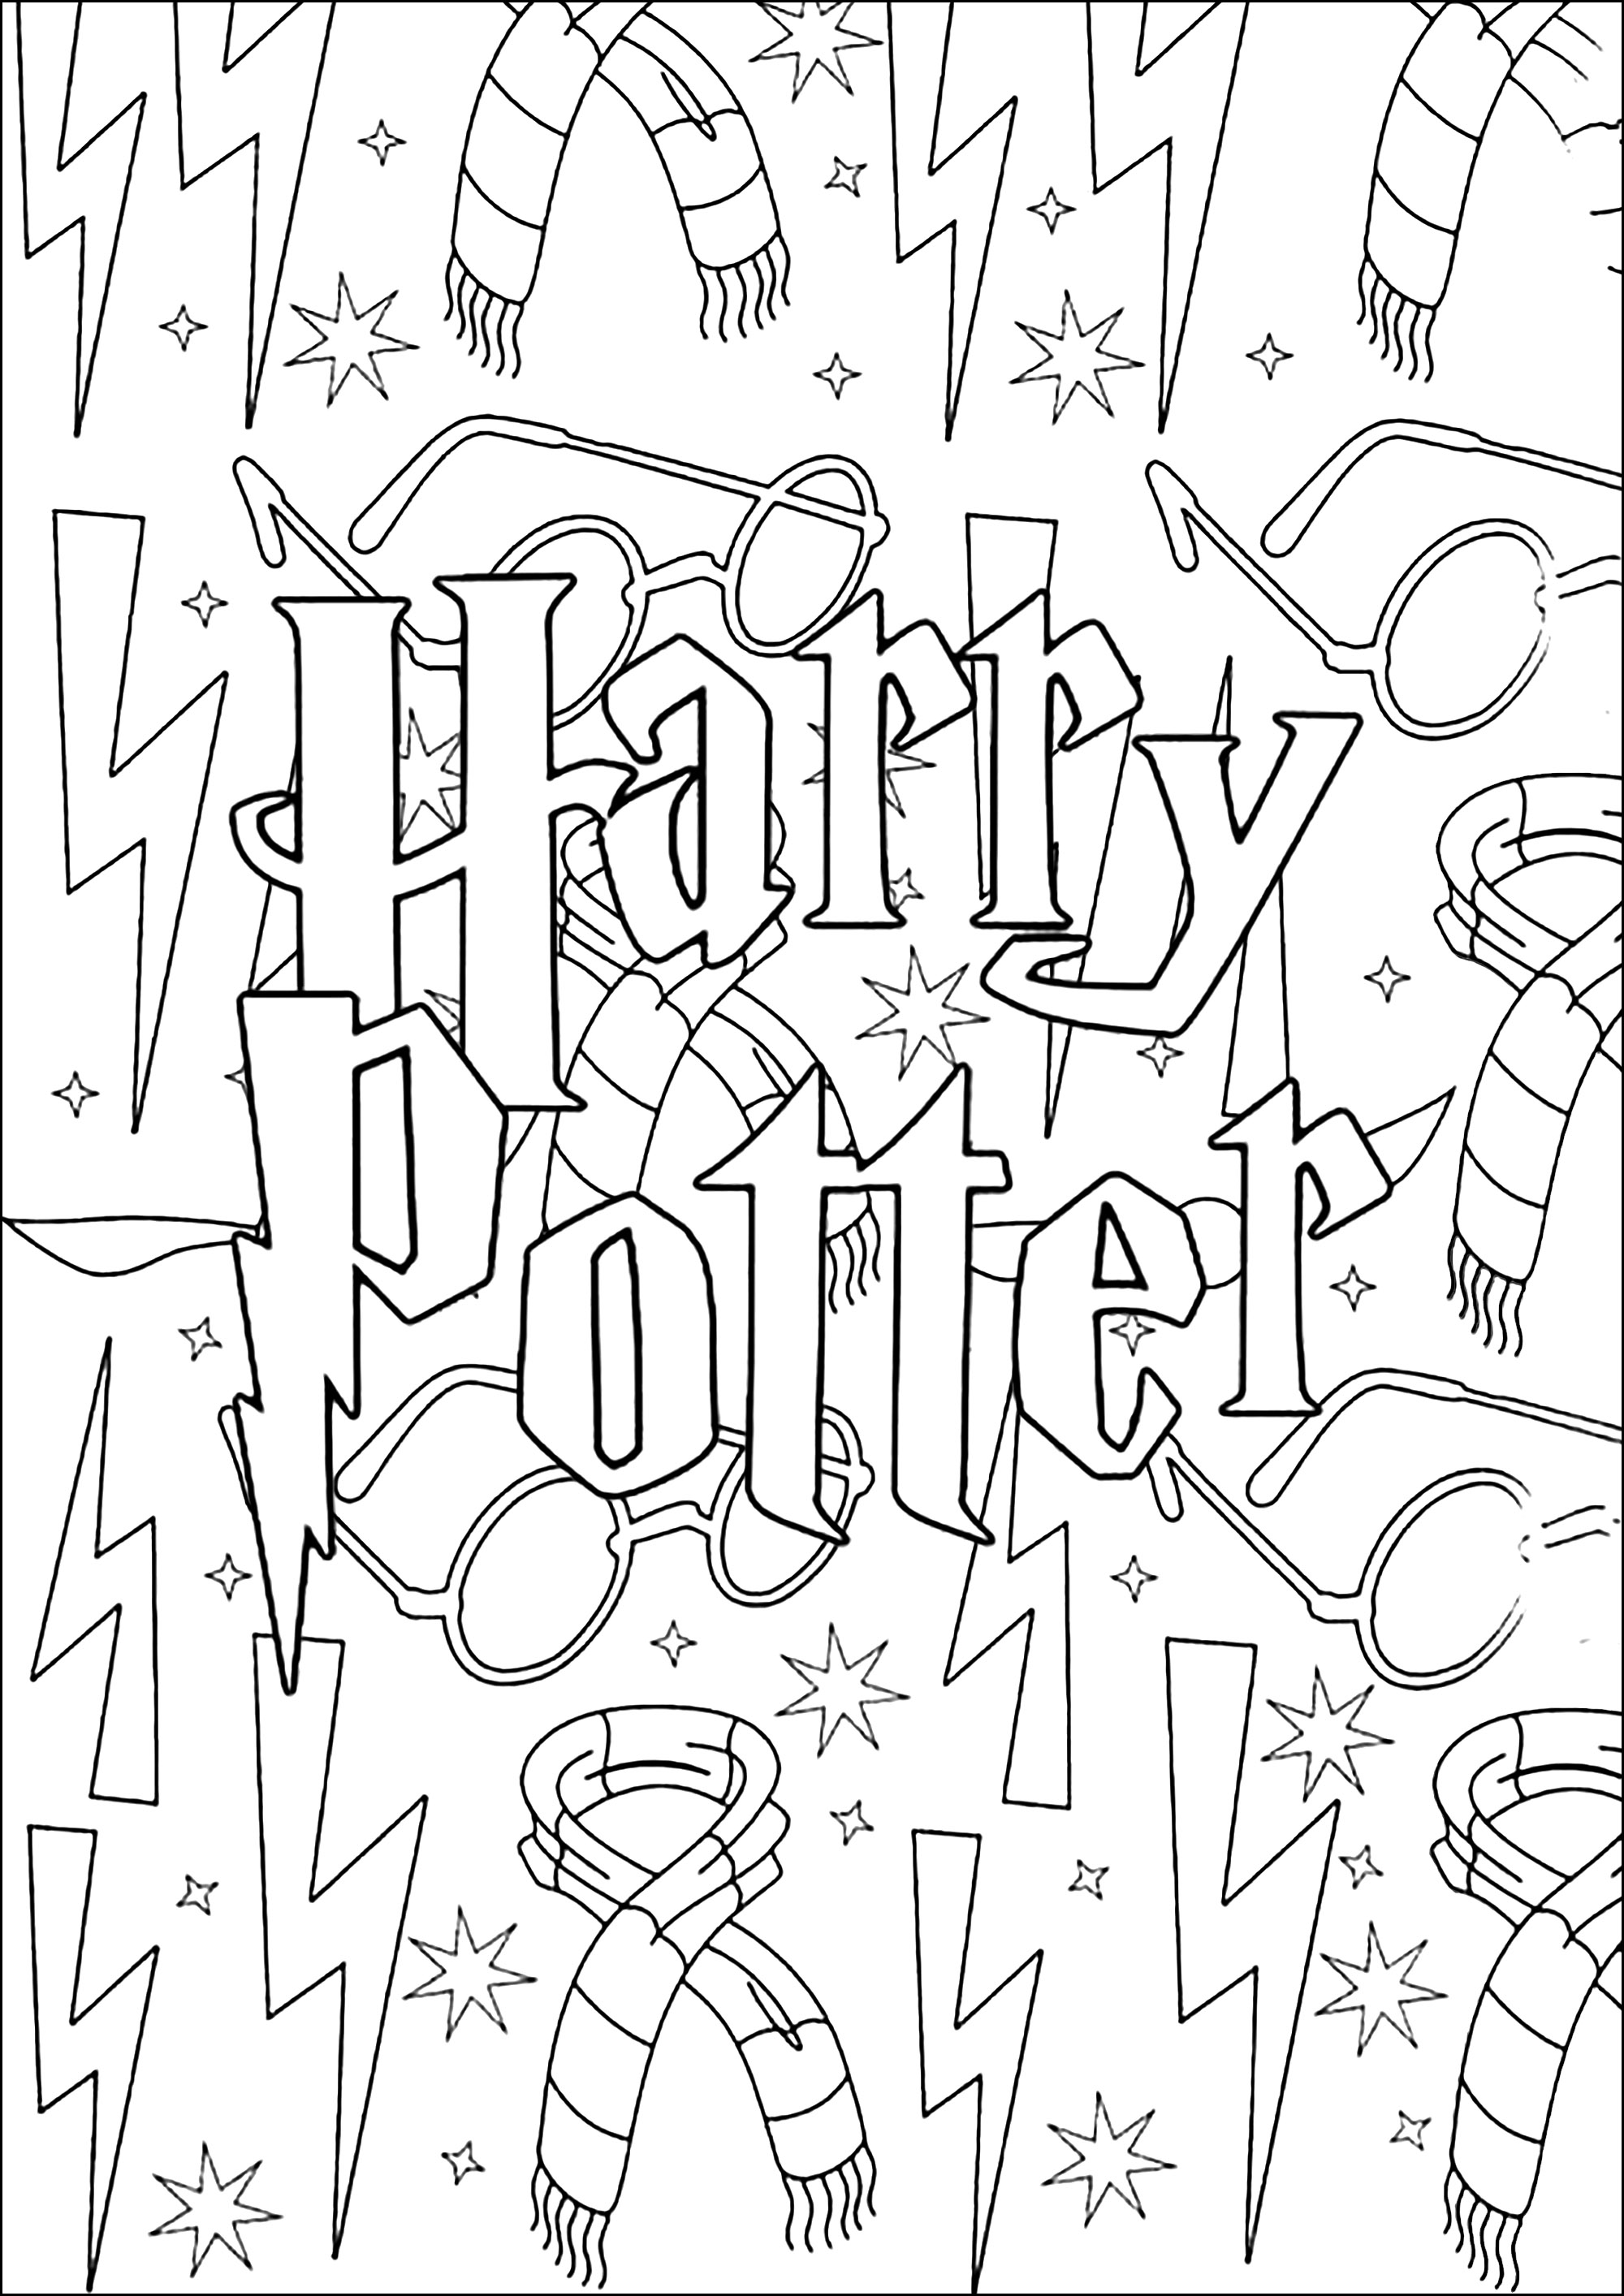 Logotipo y elementos de fondo de Harry Potter